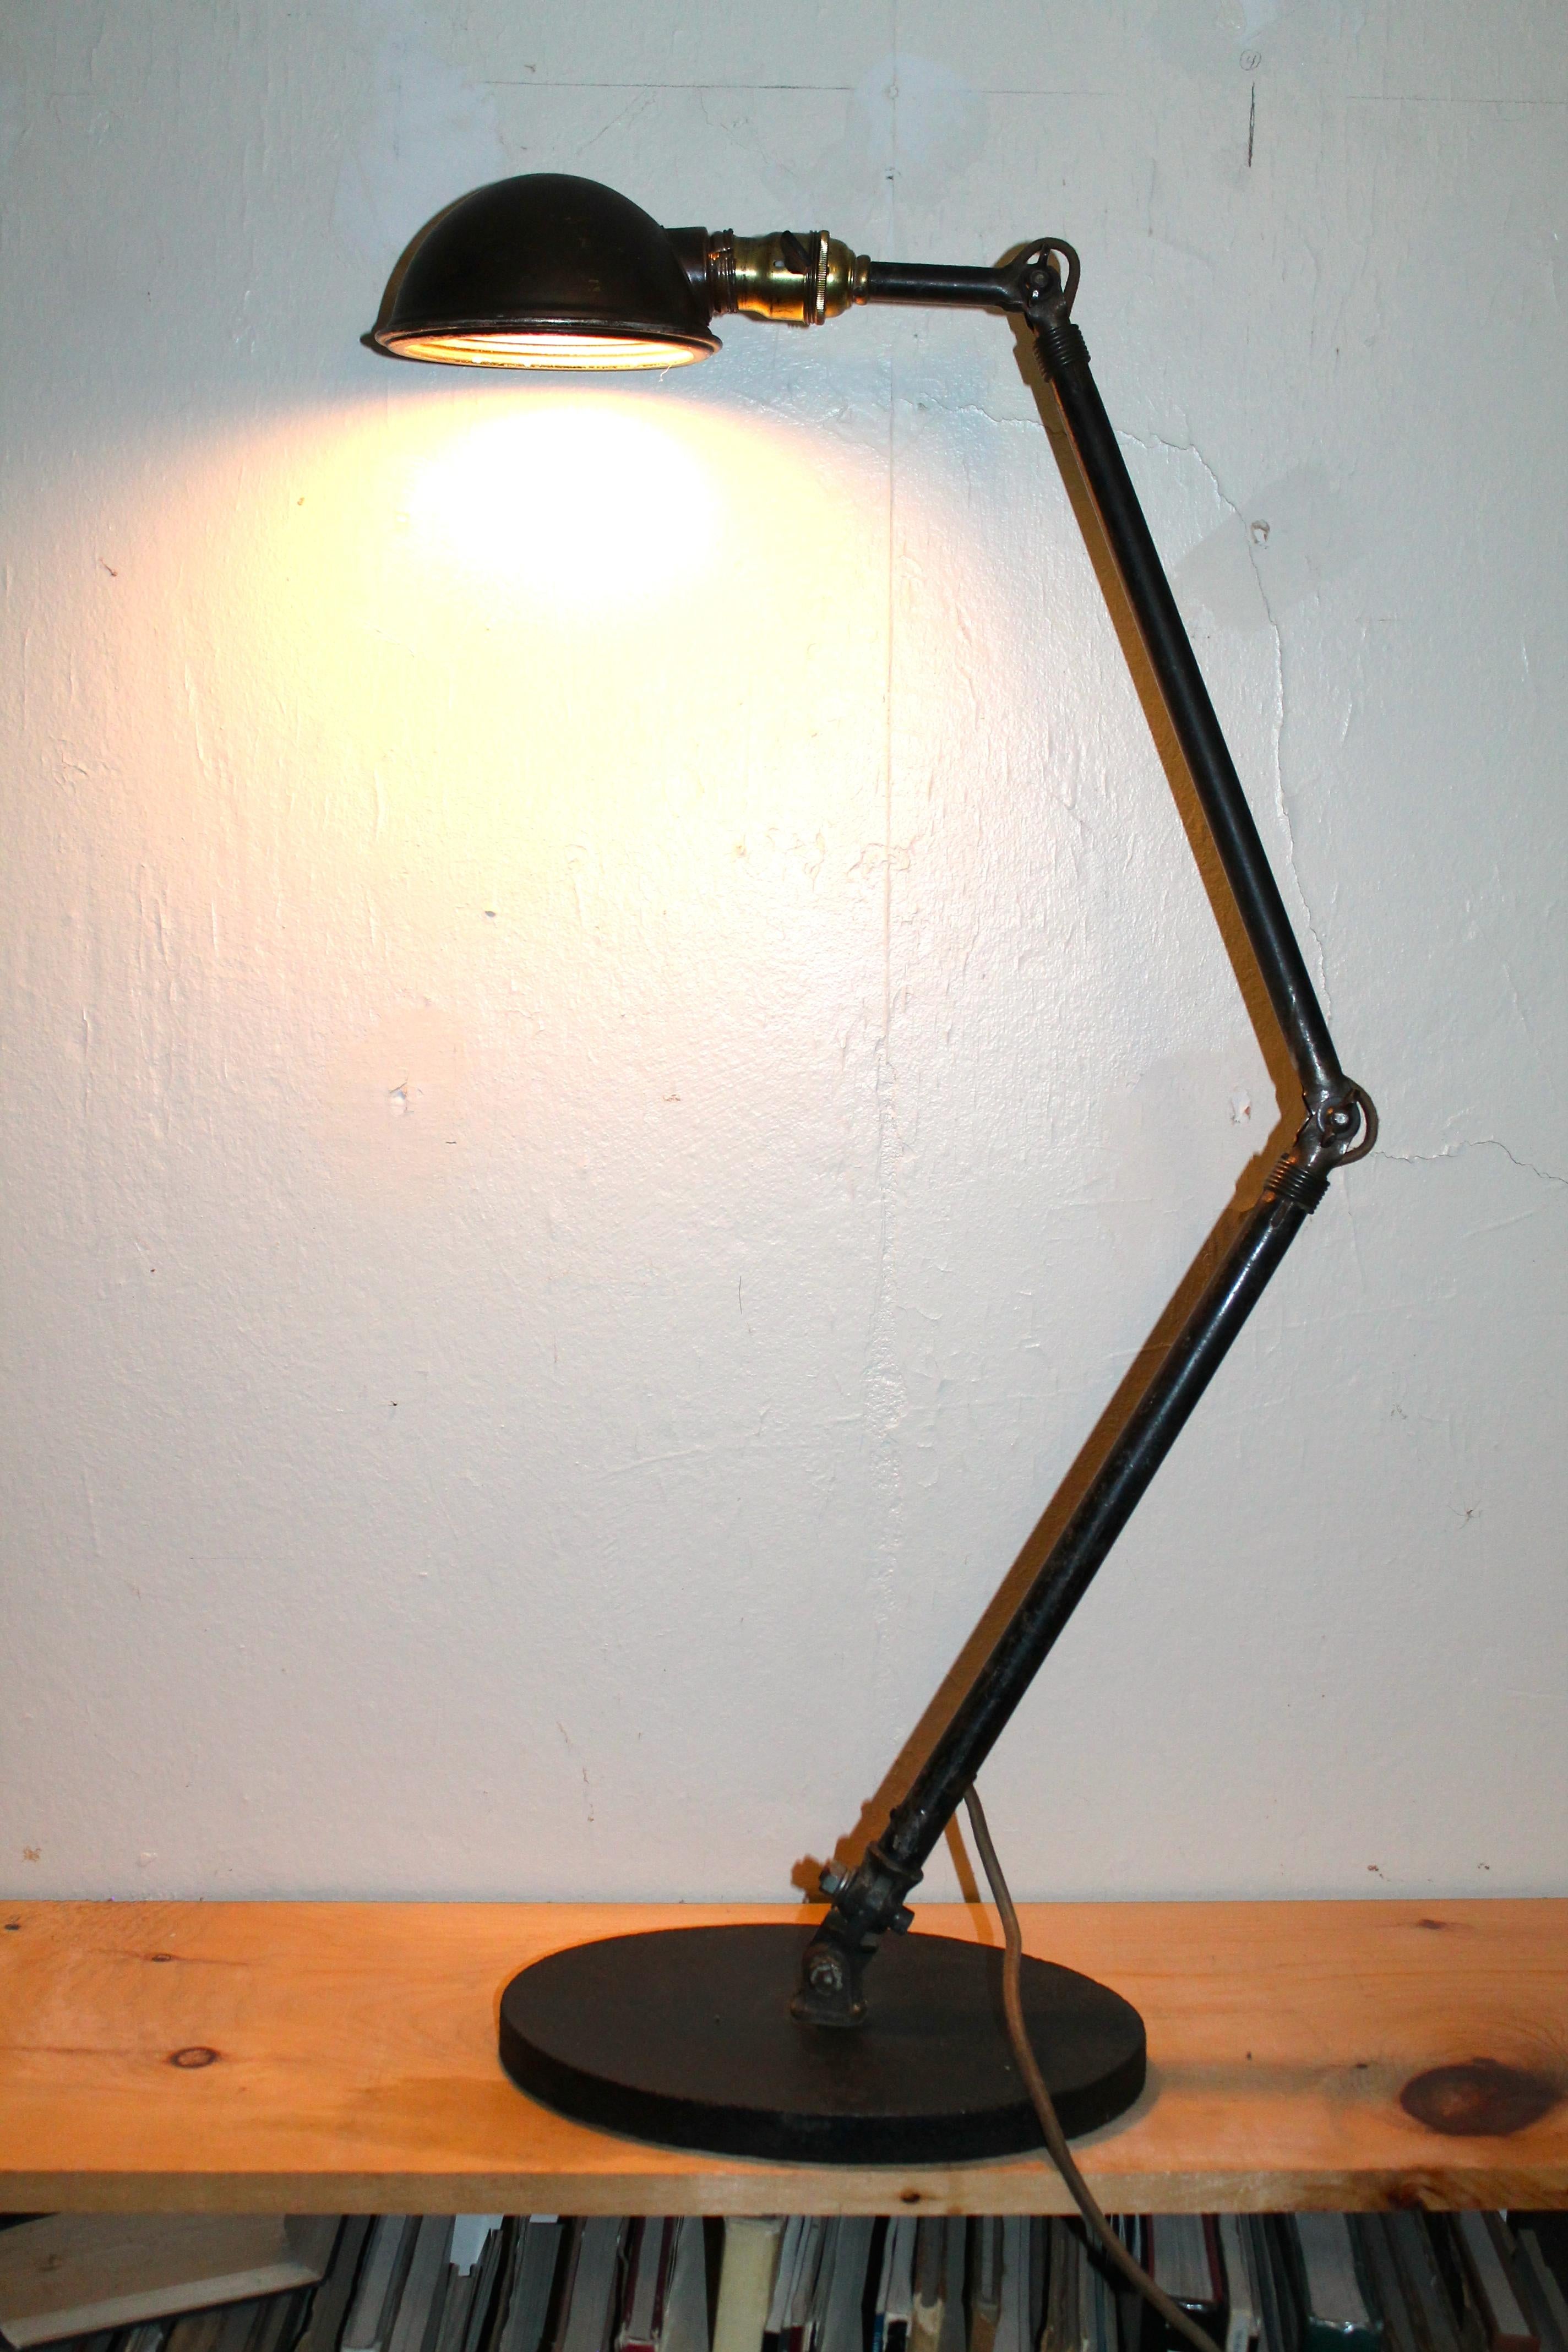 Unsere alte 'Task'-Lampe für Maschinisten wurde kürzlich neu verkabelt. Ein schöner ovaler Sockel aus Gusseisen macht diese Tischleuchte sehr praktisch und nützlich. Die volle Länge beträgt 45